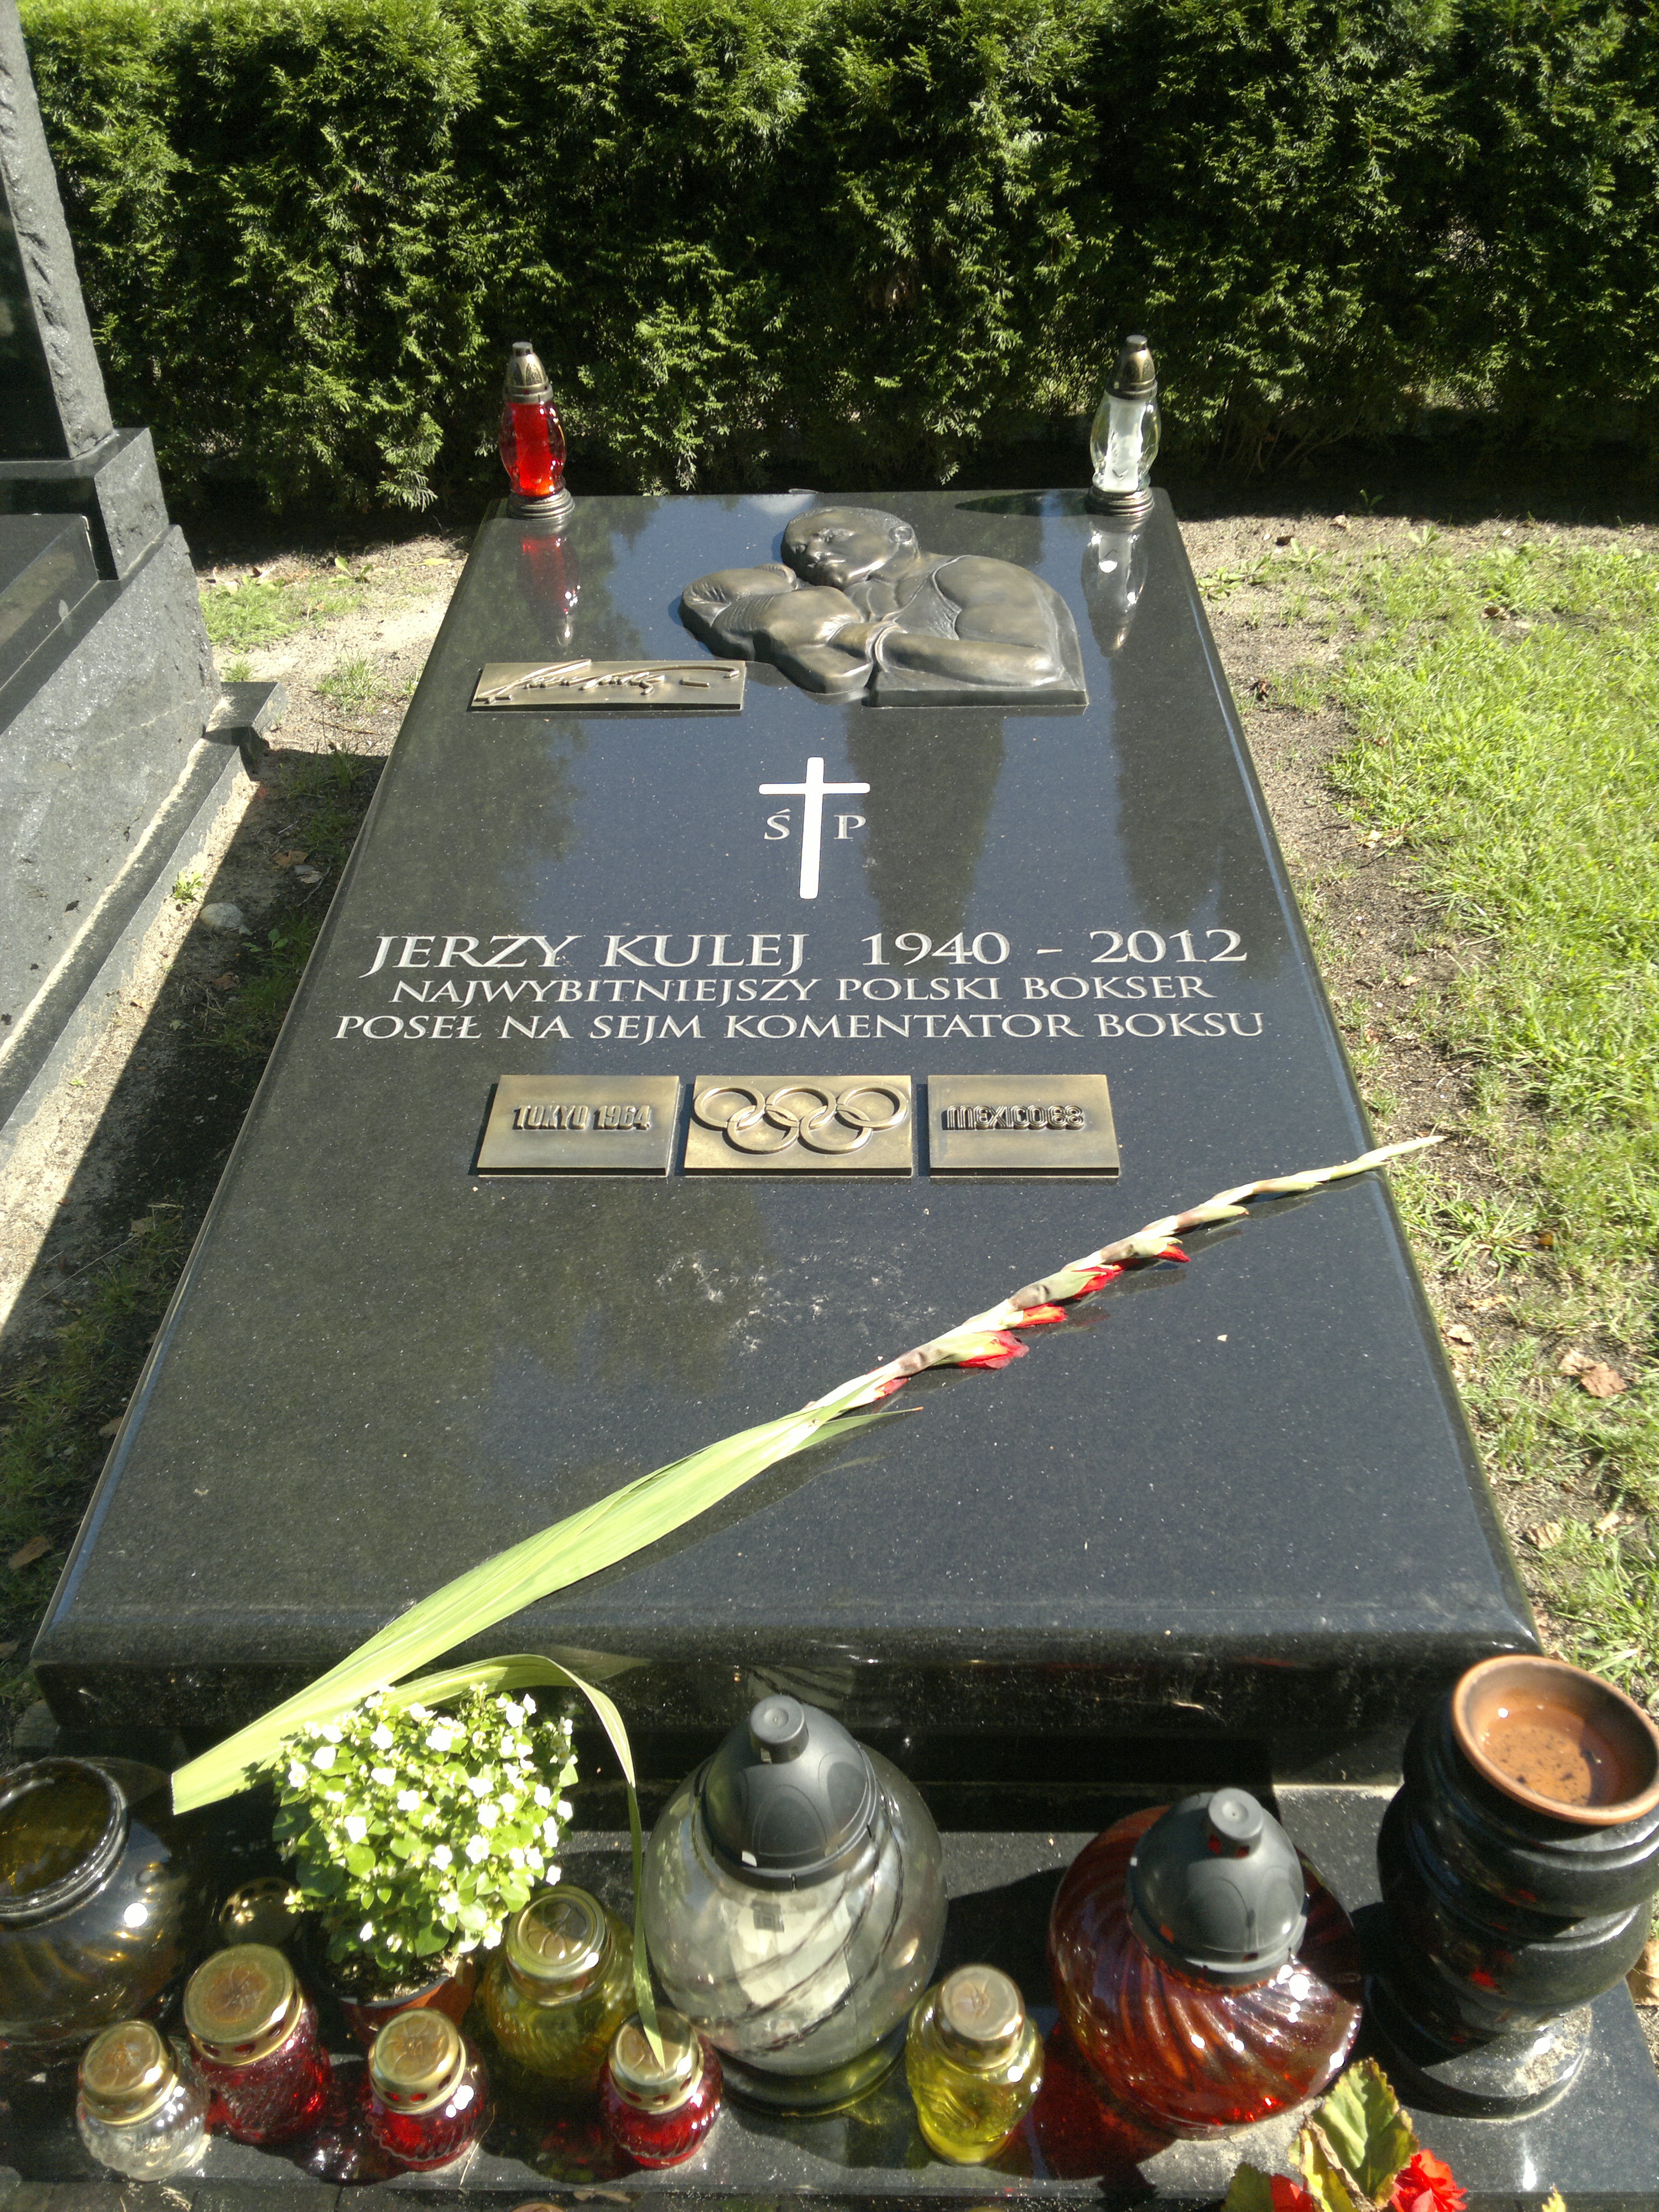 Wikipedia, Jerzy Kulej, Self-published work, Warsaw Military Cemetery - K